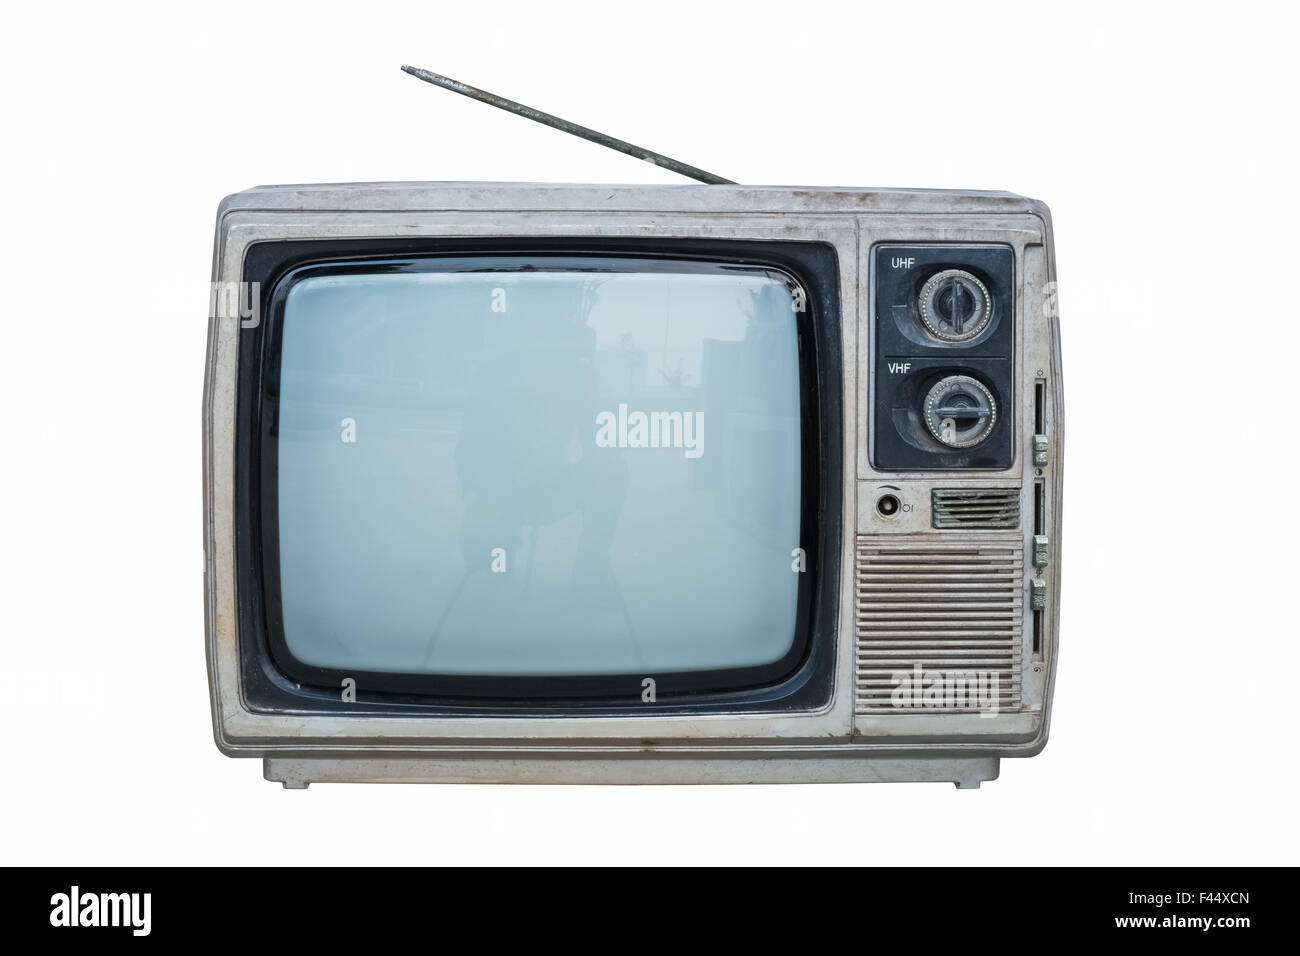 ANTENA TV BASICA PARA INTERIOR TELEVISIÓN ANALÓGICA CABLE SEÑAL